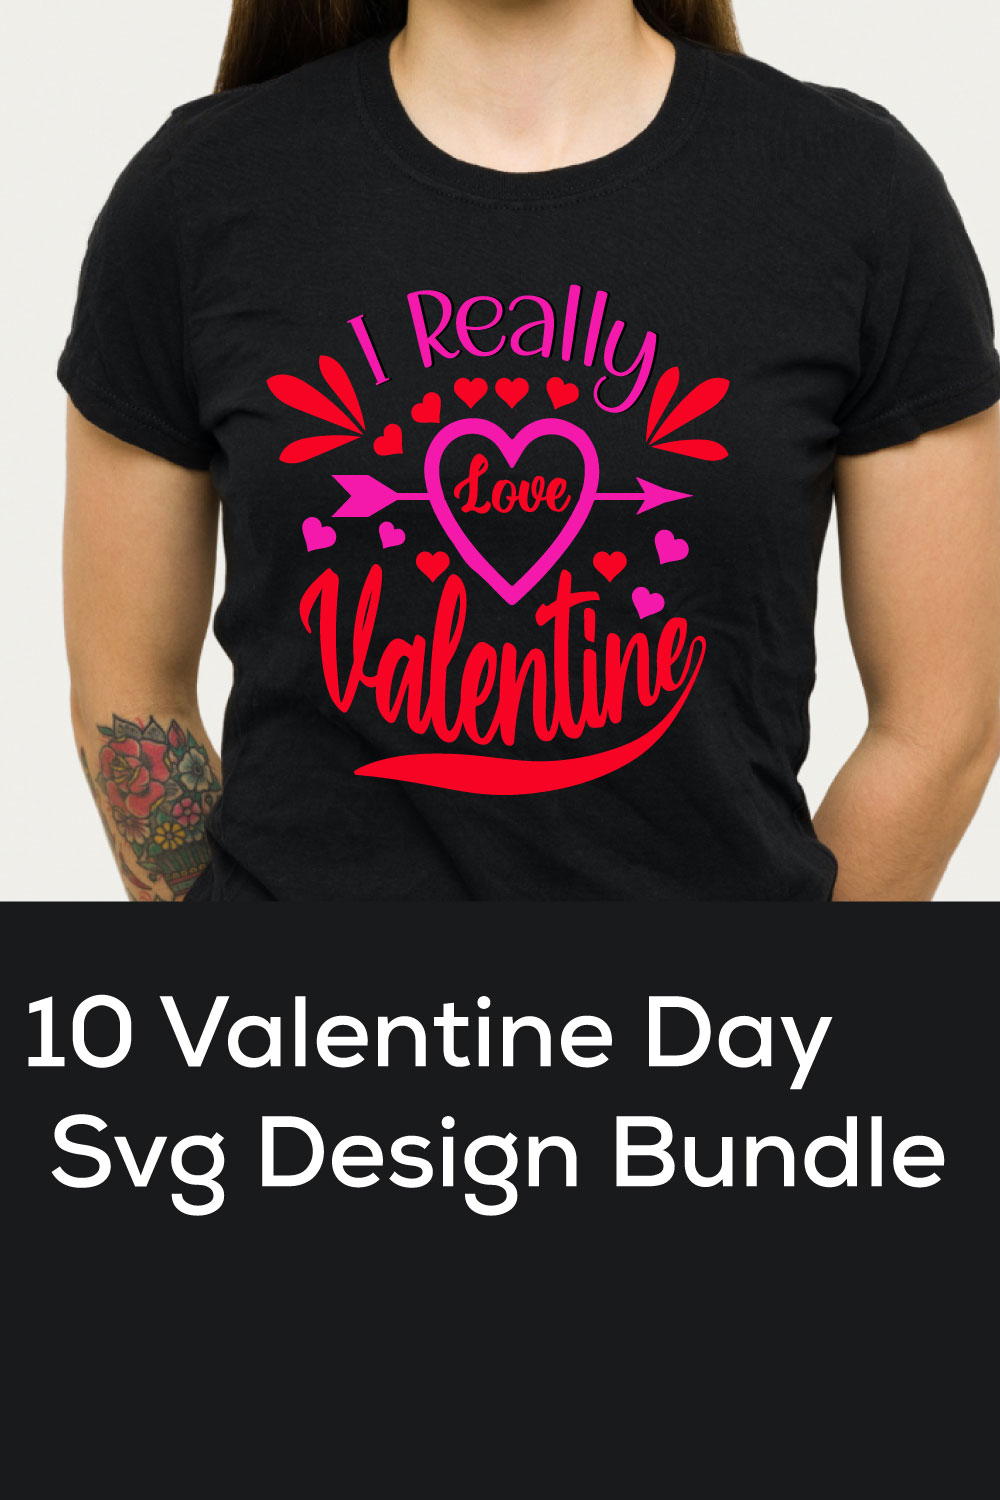 T-shirt Valentine Day SVG Design Bundle pinterest image.